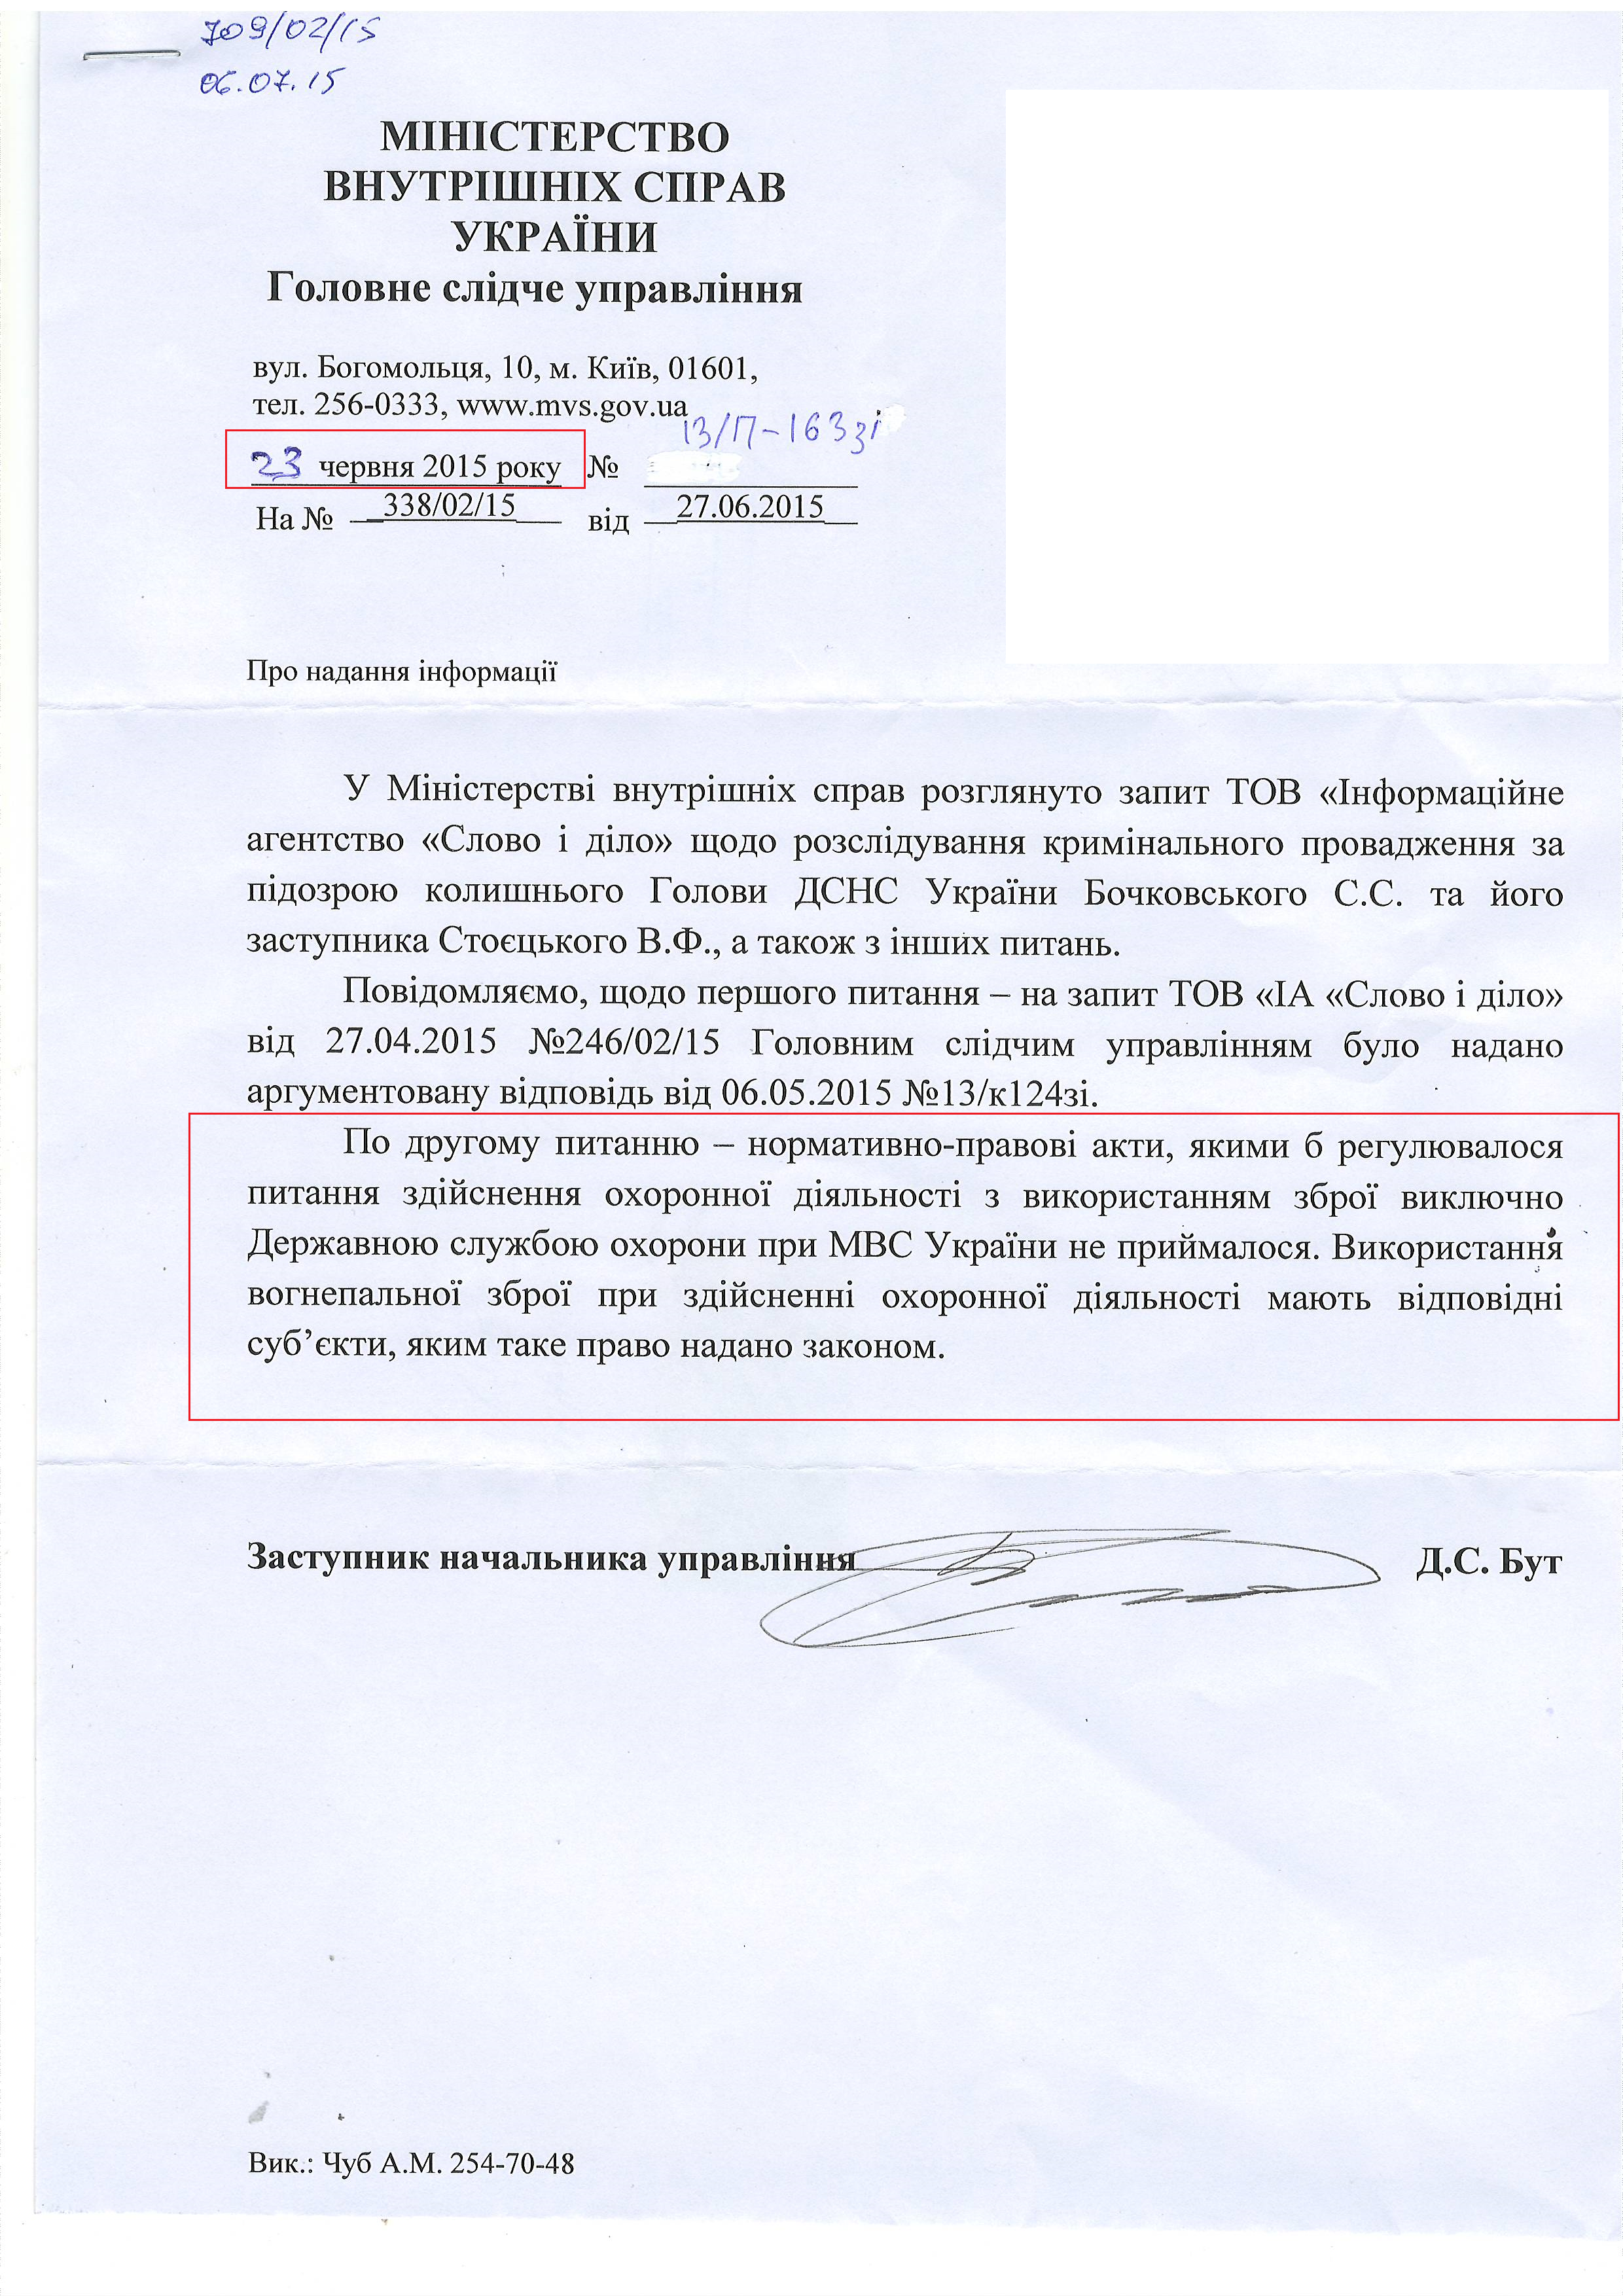 Лист Міністерства внутрішніх справ України від 23 червня 2015 року